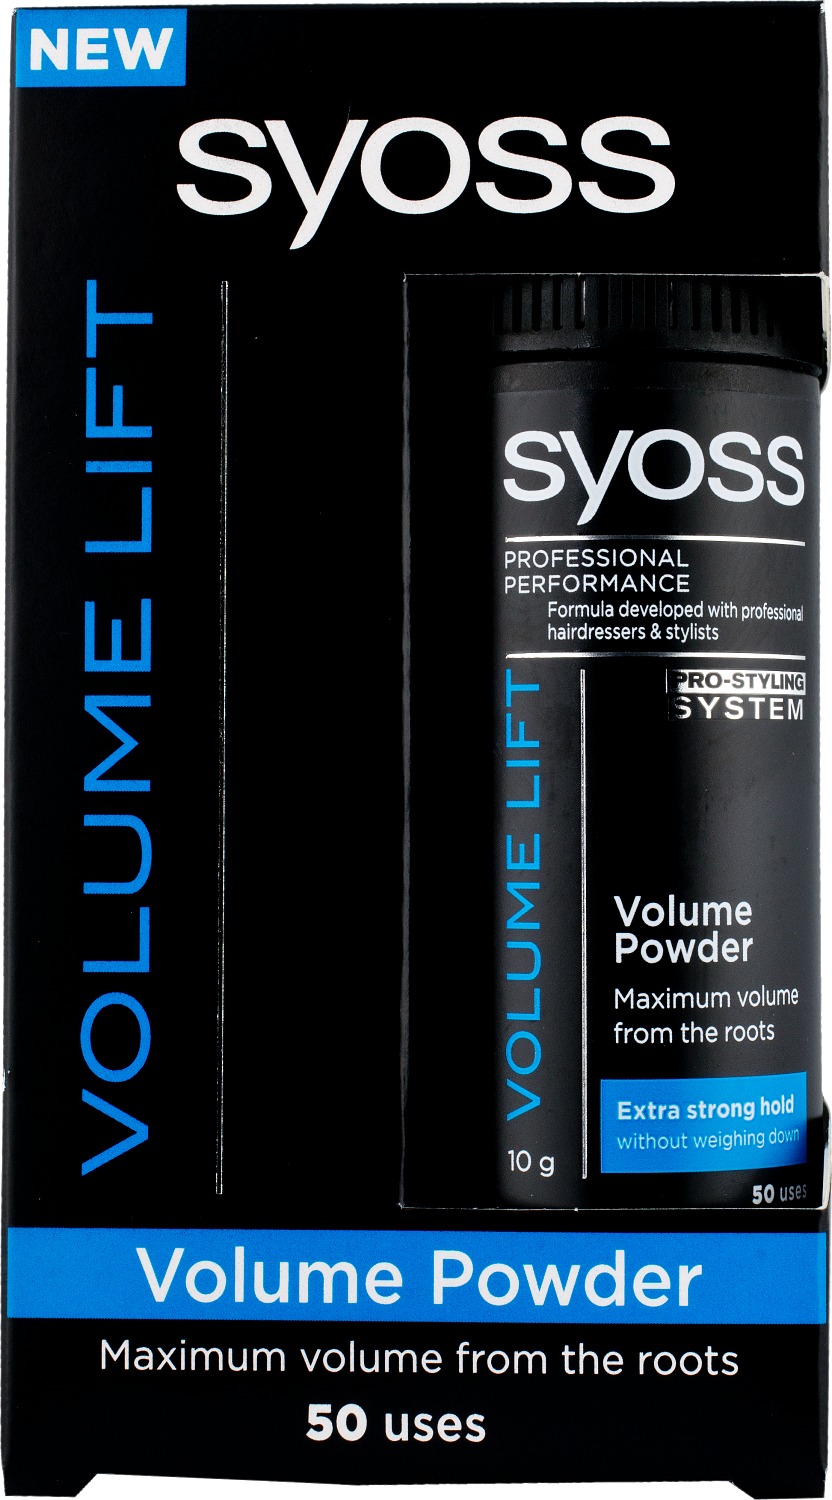 Syoss Styling Volume Powder 10g